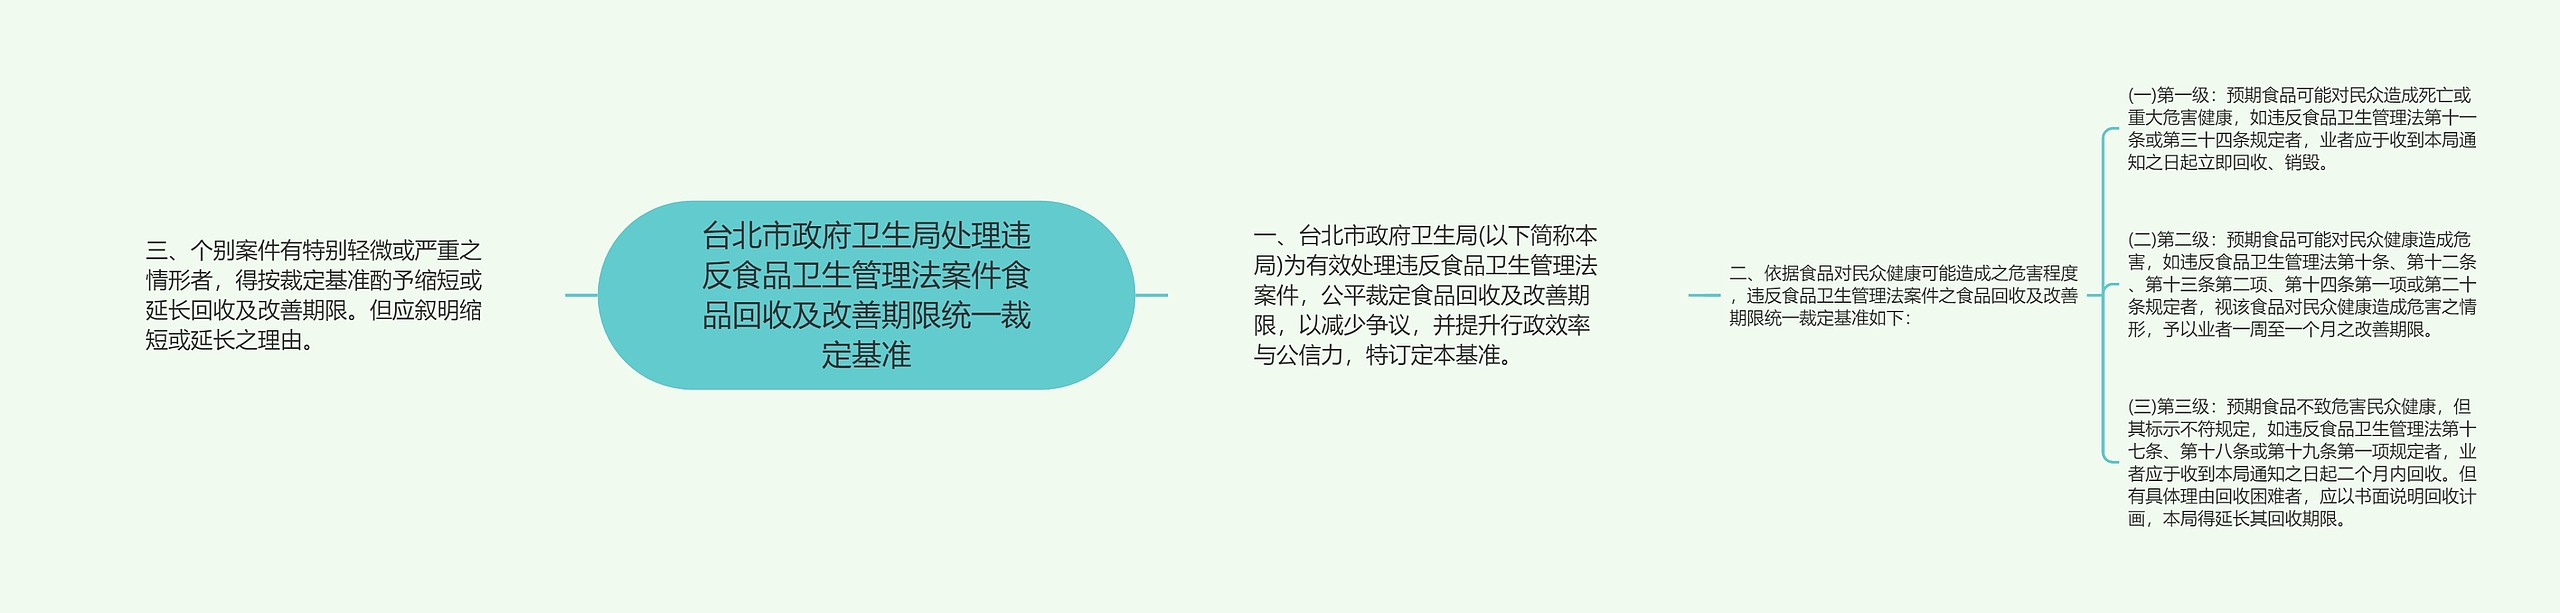 台北市政府卫生局处理违反食品卫生管理法案件食品回收及改善期限统一裁定基准